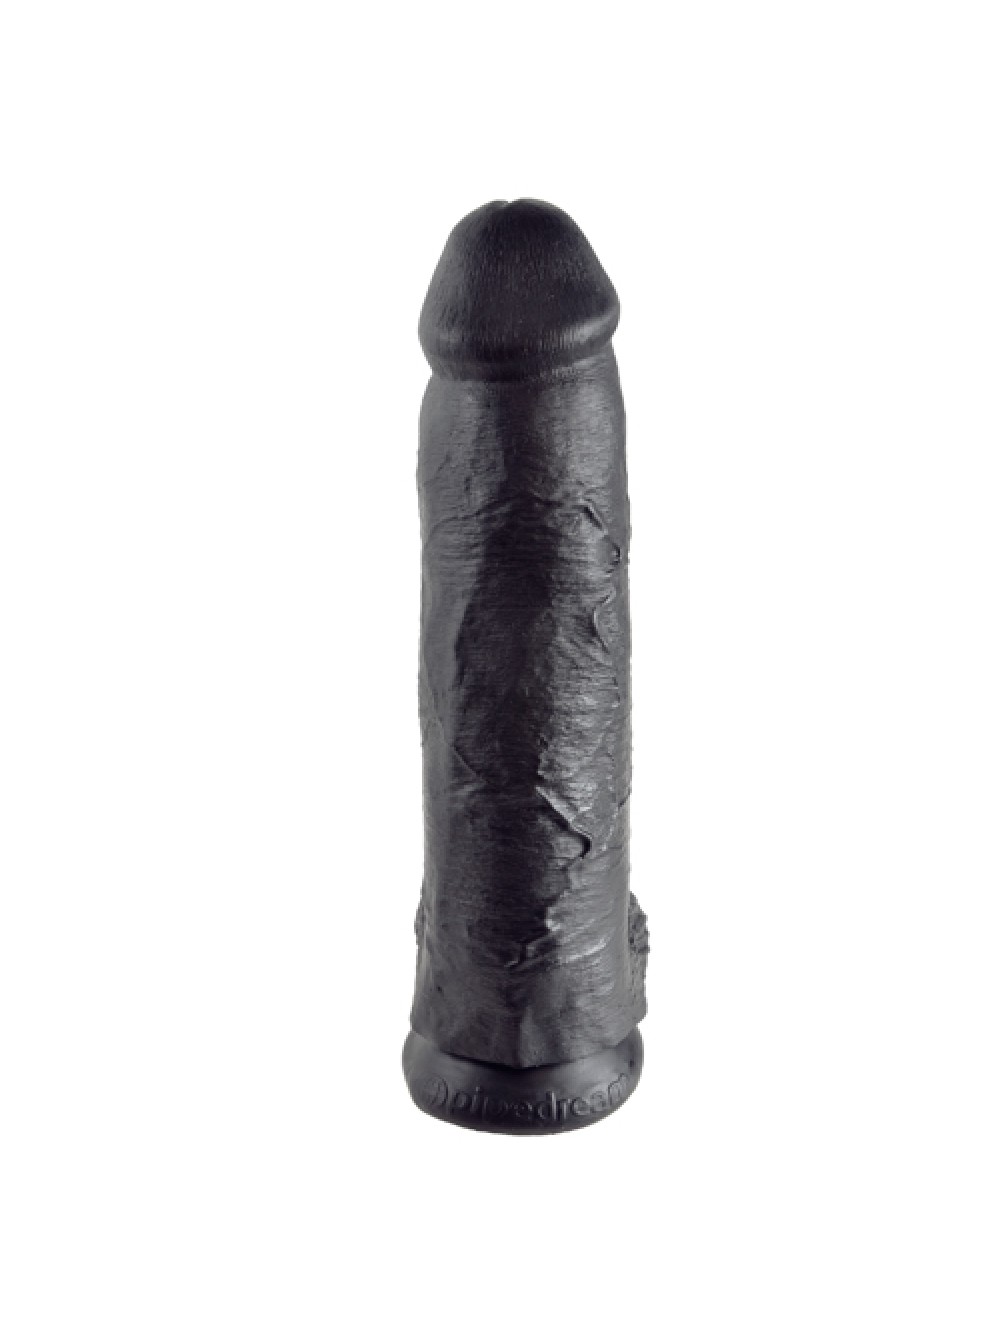 King Cock di 30 cm - Dildo con Testicoli color Nero